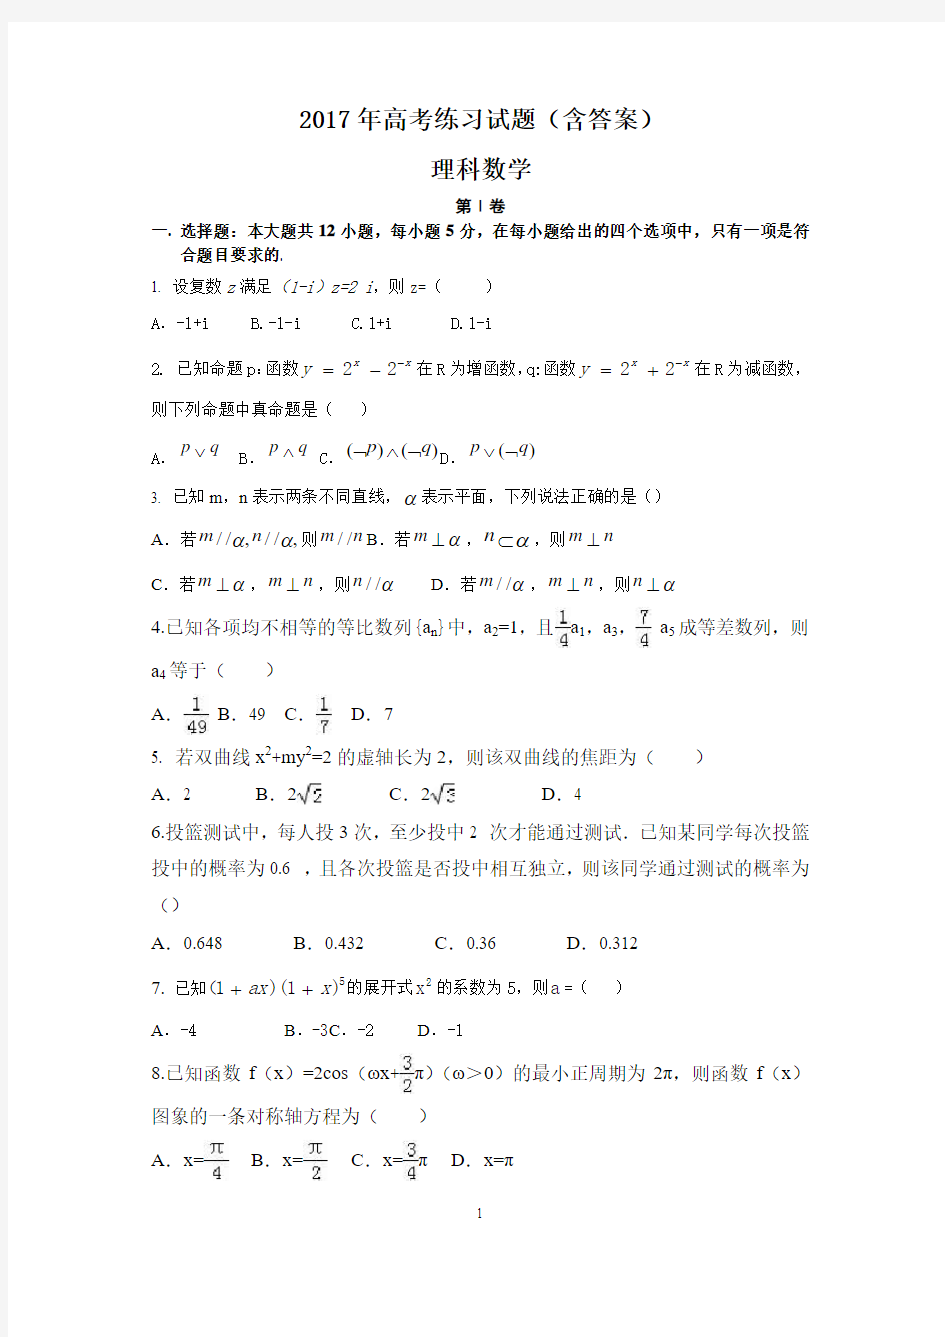 理科数学高考练习试题(含答案)